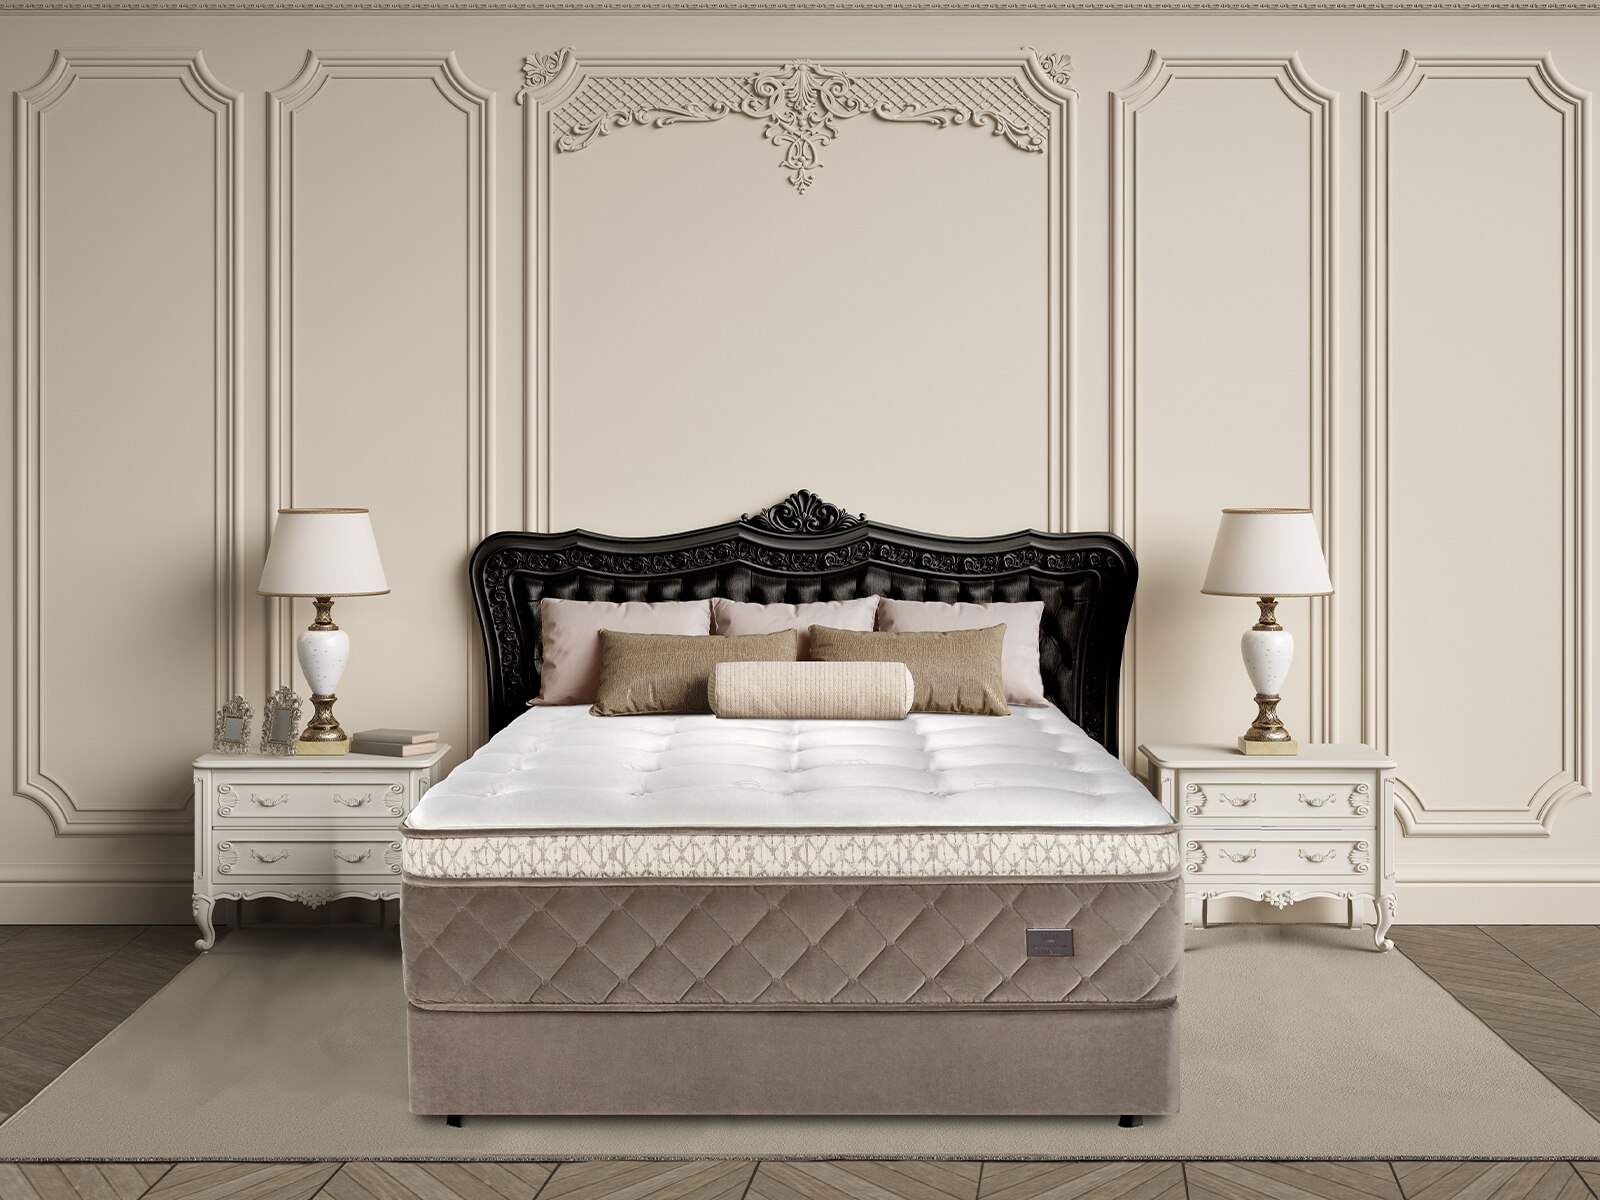 chattam & wells revere latex euro top queen mattress